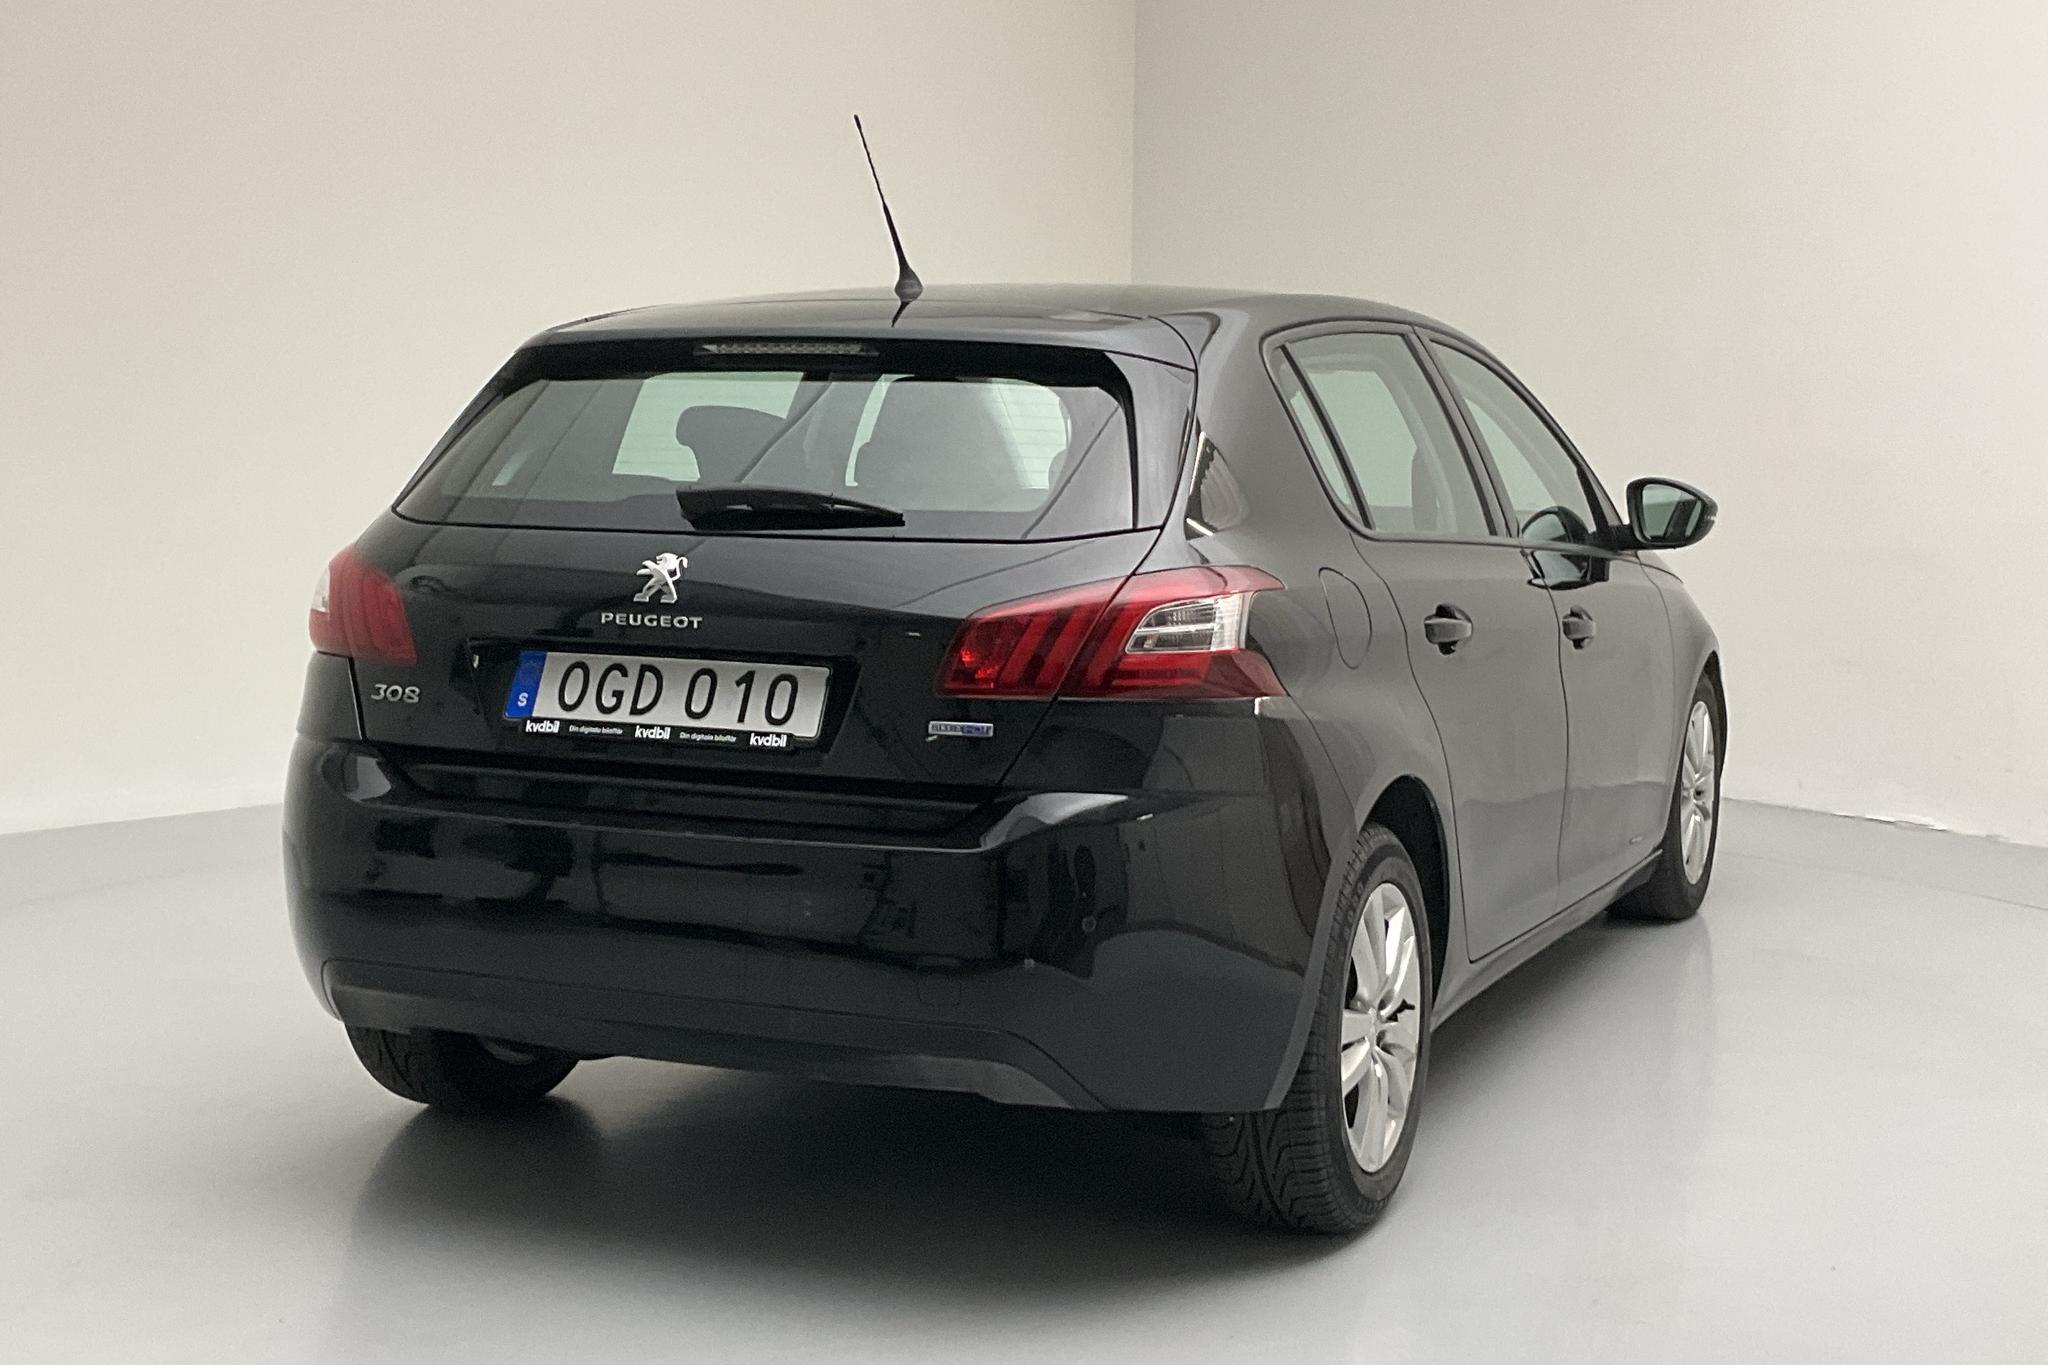 Peugeot 308 BlueHDi 5dr (120hk) - 12 083 mil - Automat - svart - 2017